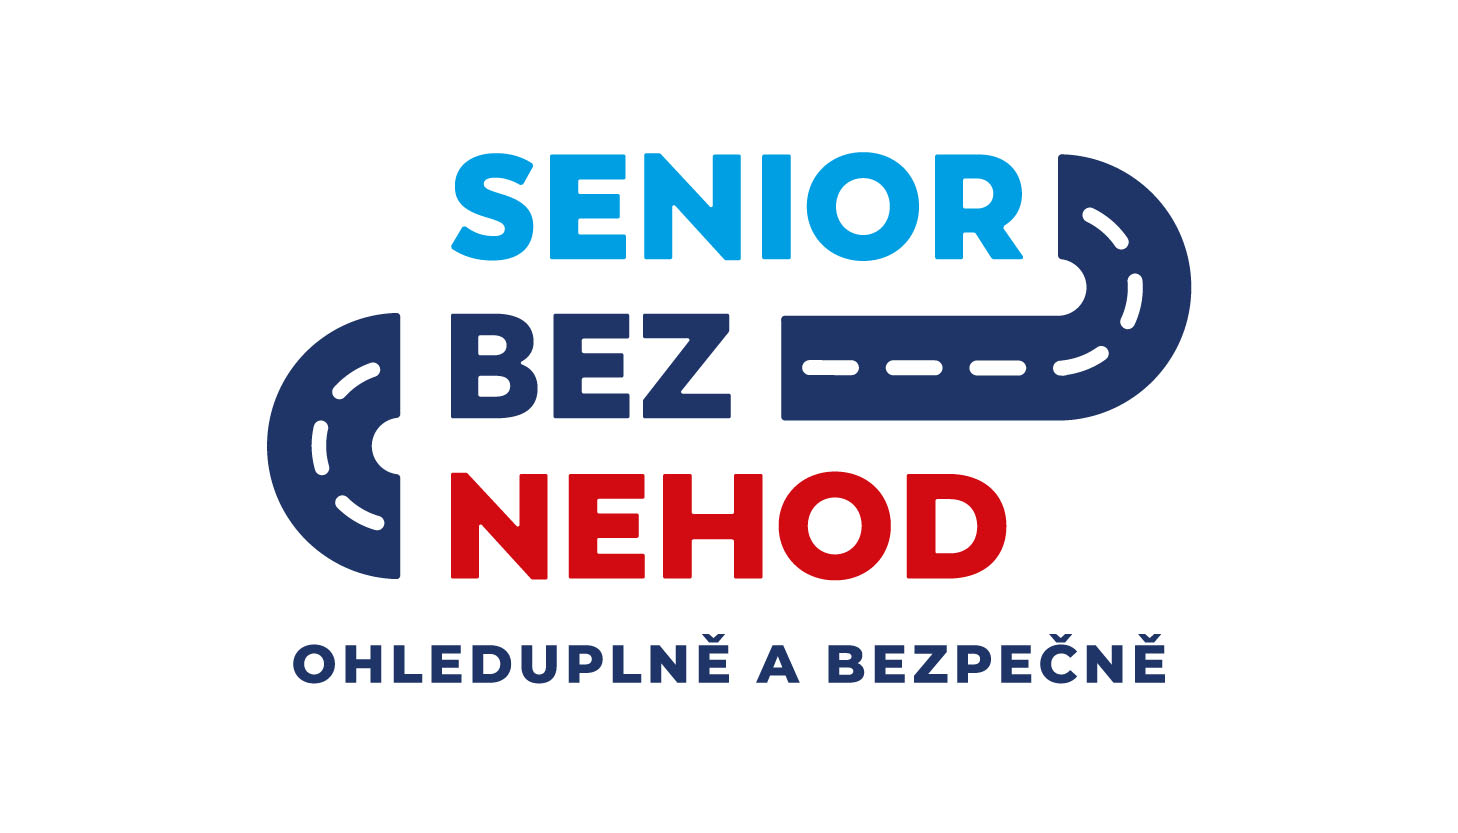 Logo_Senior bez nehod_2020.jpg